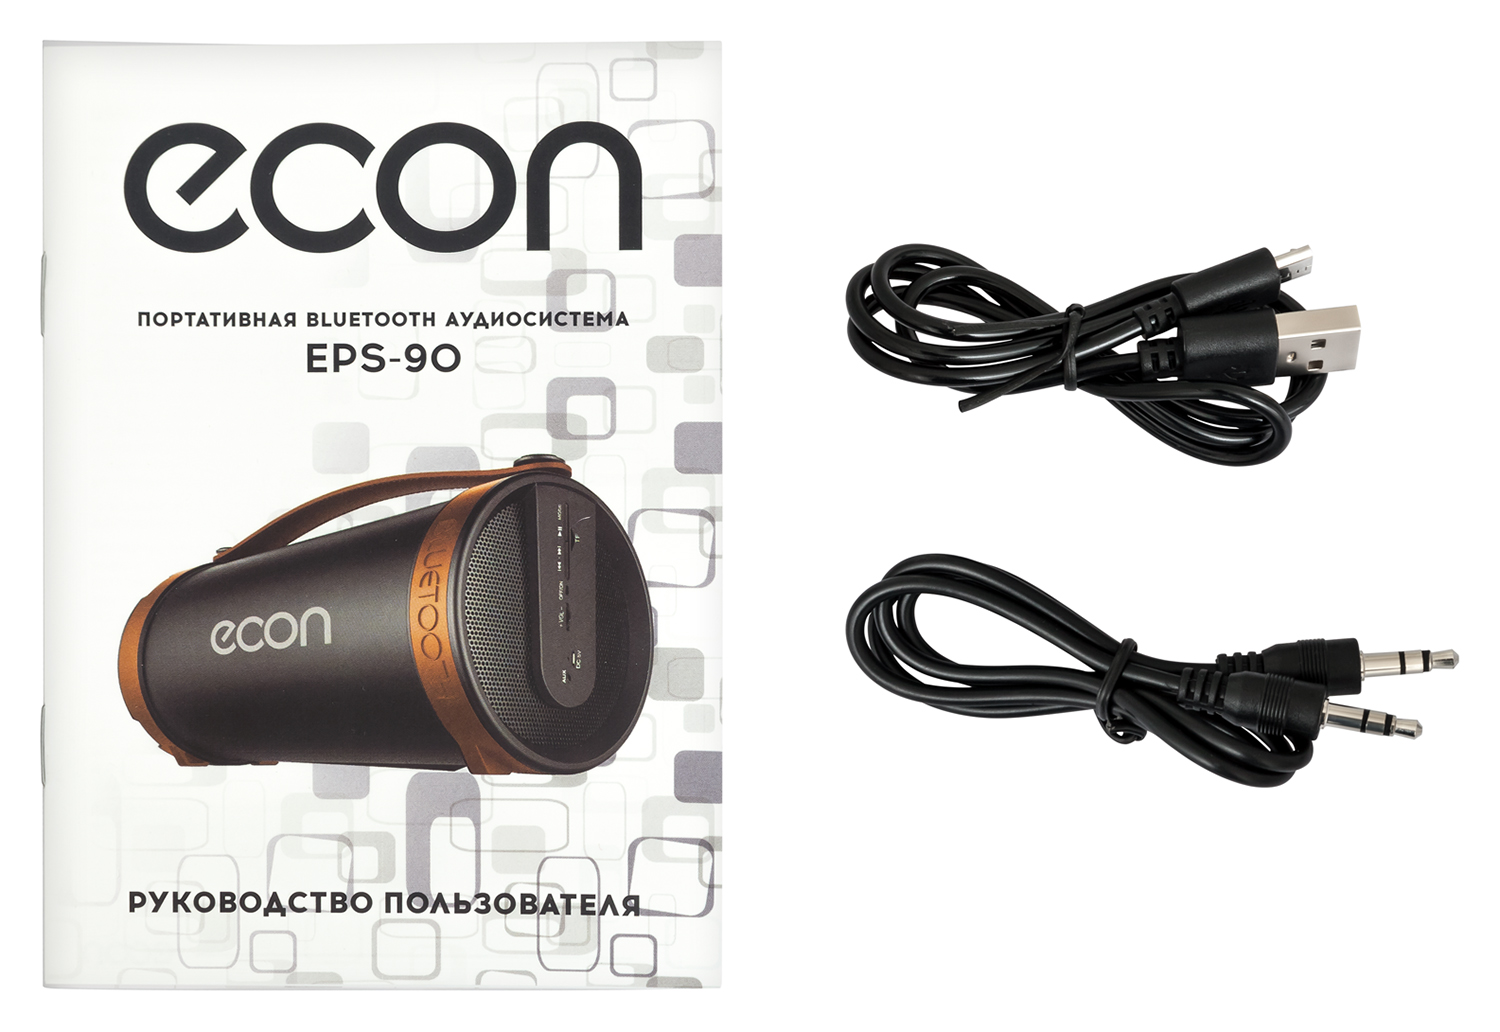 Картинка Портативная акустика ECON EPS-90 по разумной цене купить в интернет магазине mall.su